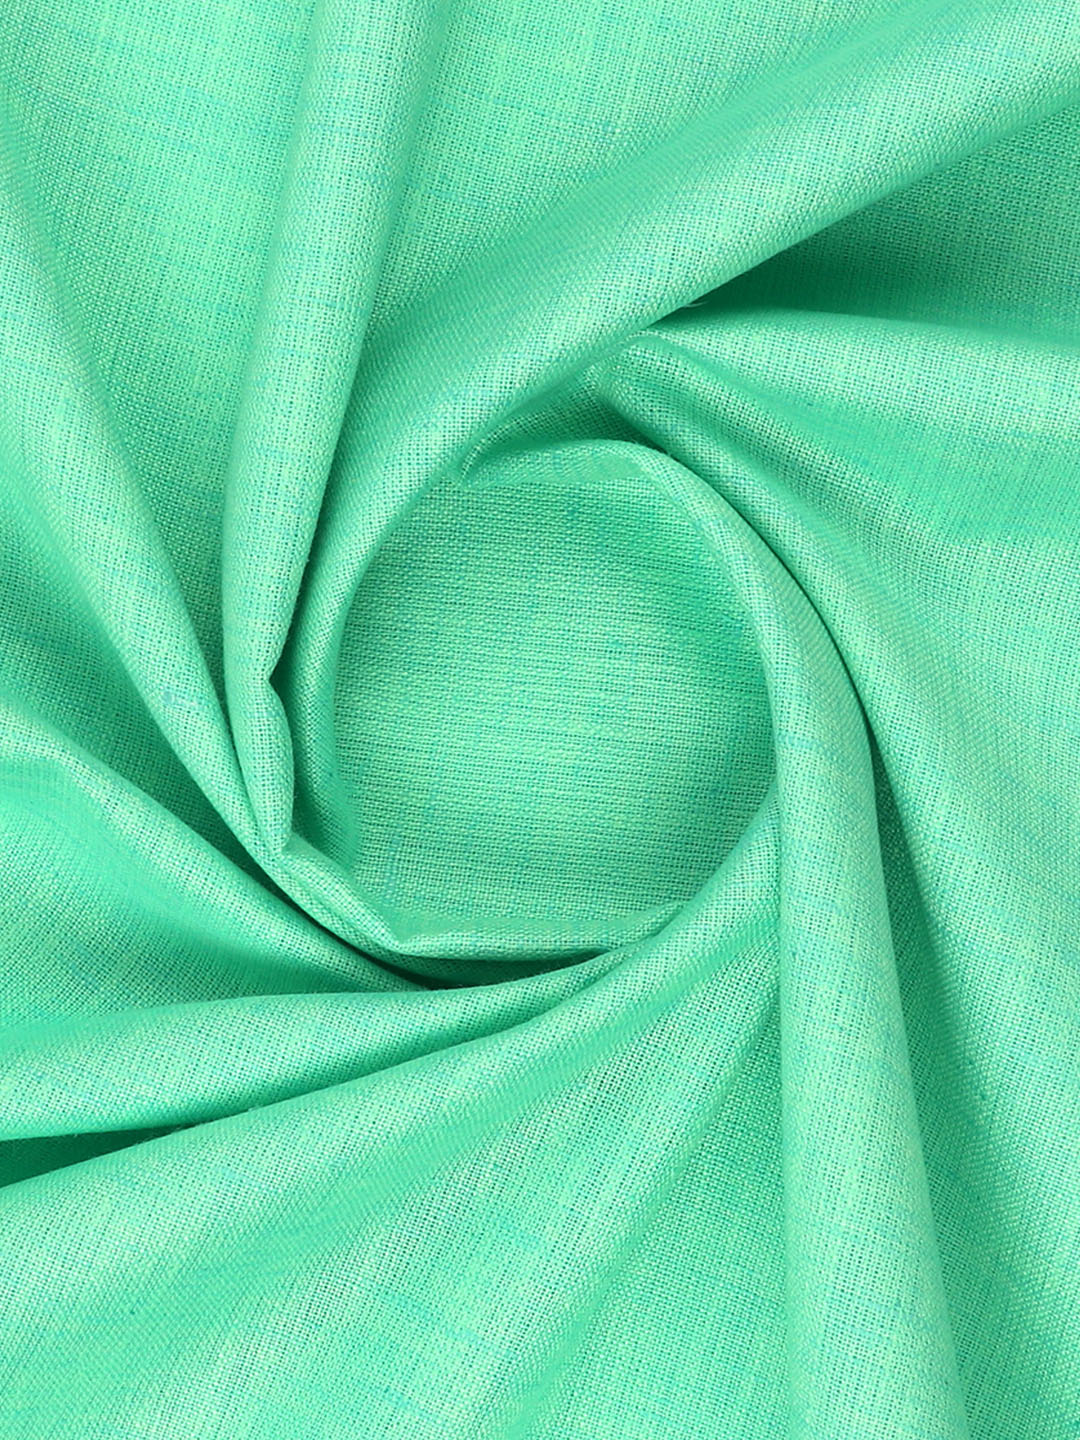 Cotton Blend Lite Green Colour Kurtha Fabric Lampus - APC1106-45